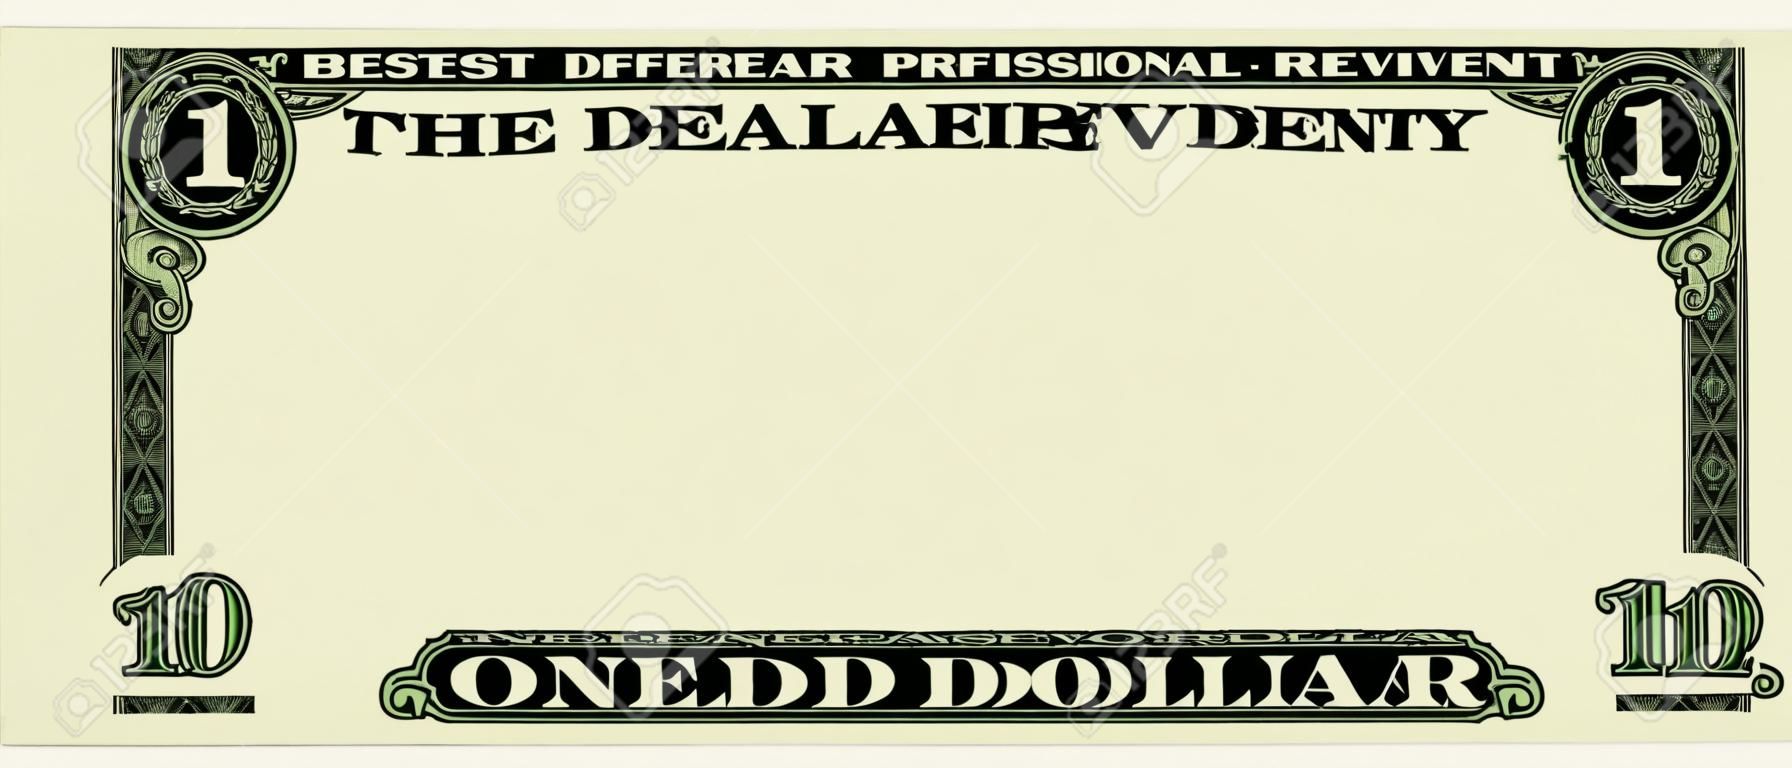 Blank banconota da un dollaro